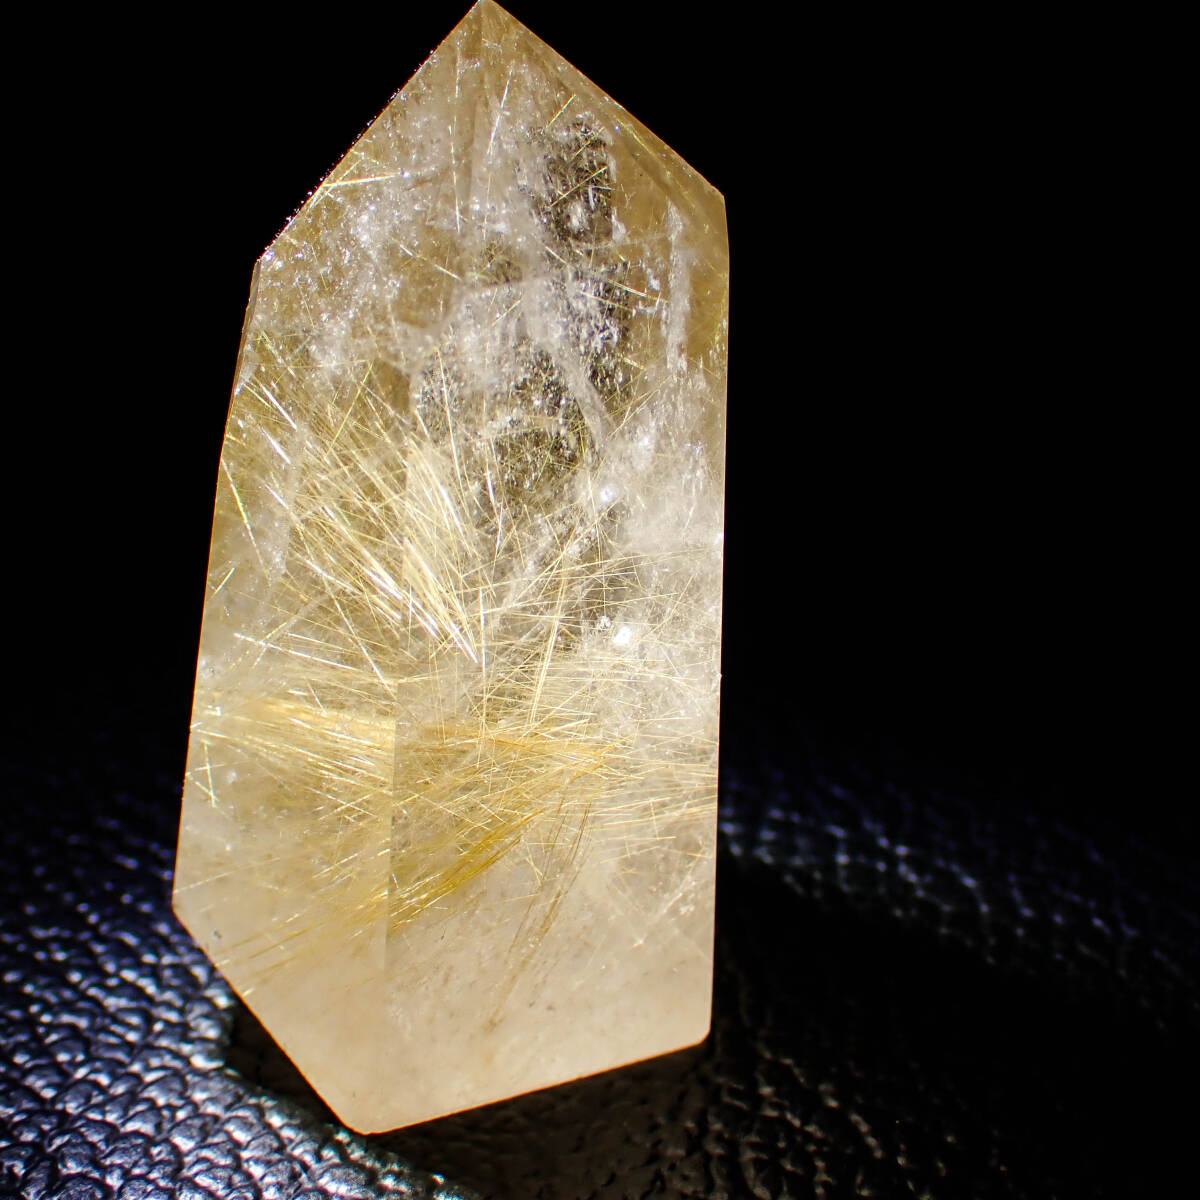  natural stone Taichi n Gold rutile 001 Point crystal gold circle sphere sphere crystal sphere feng shui health raw ore rutile quartz Power Stone 